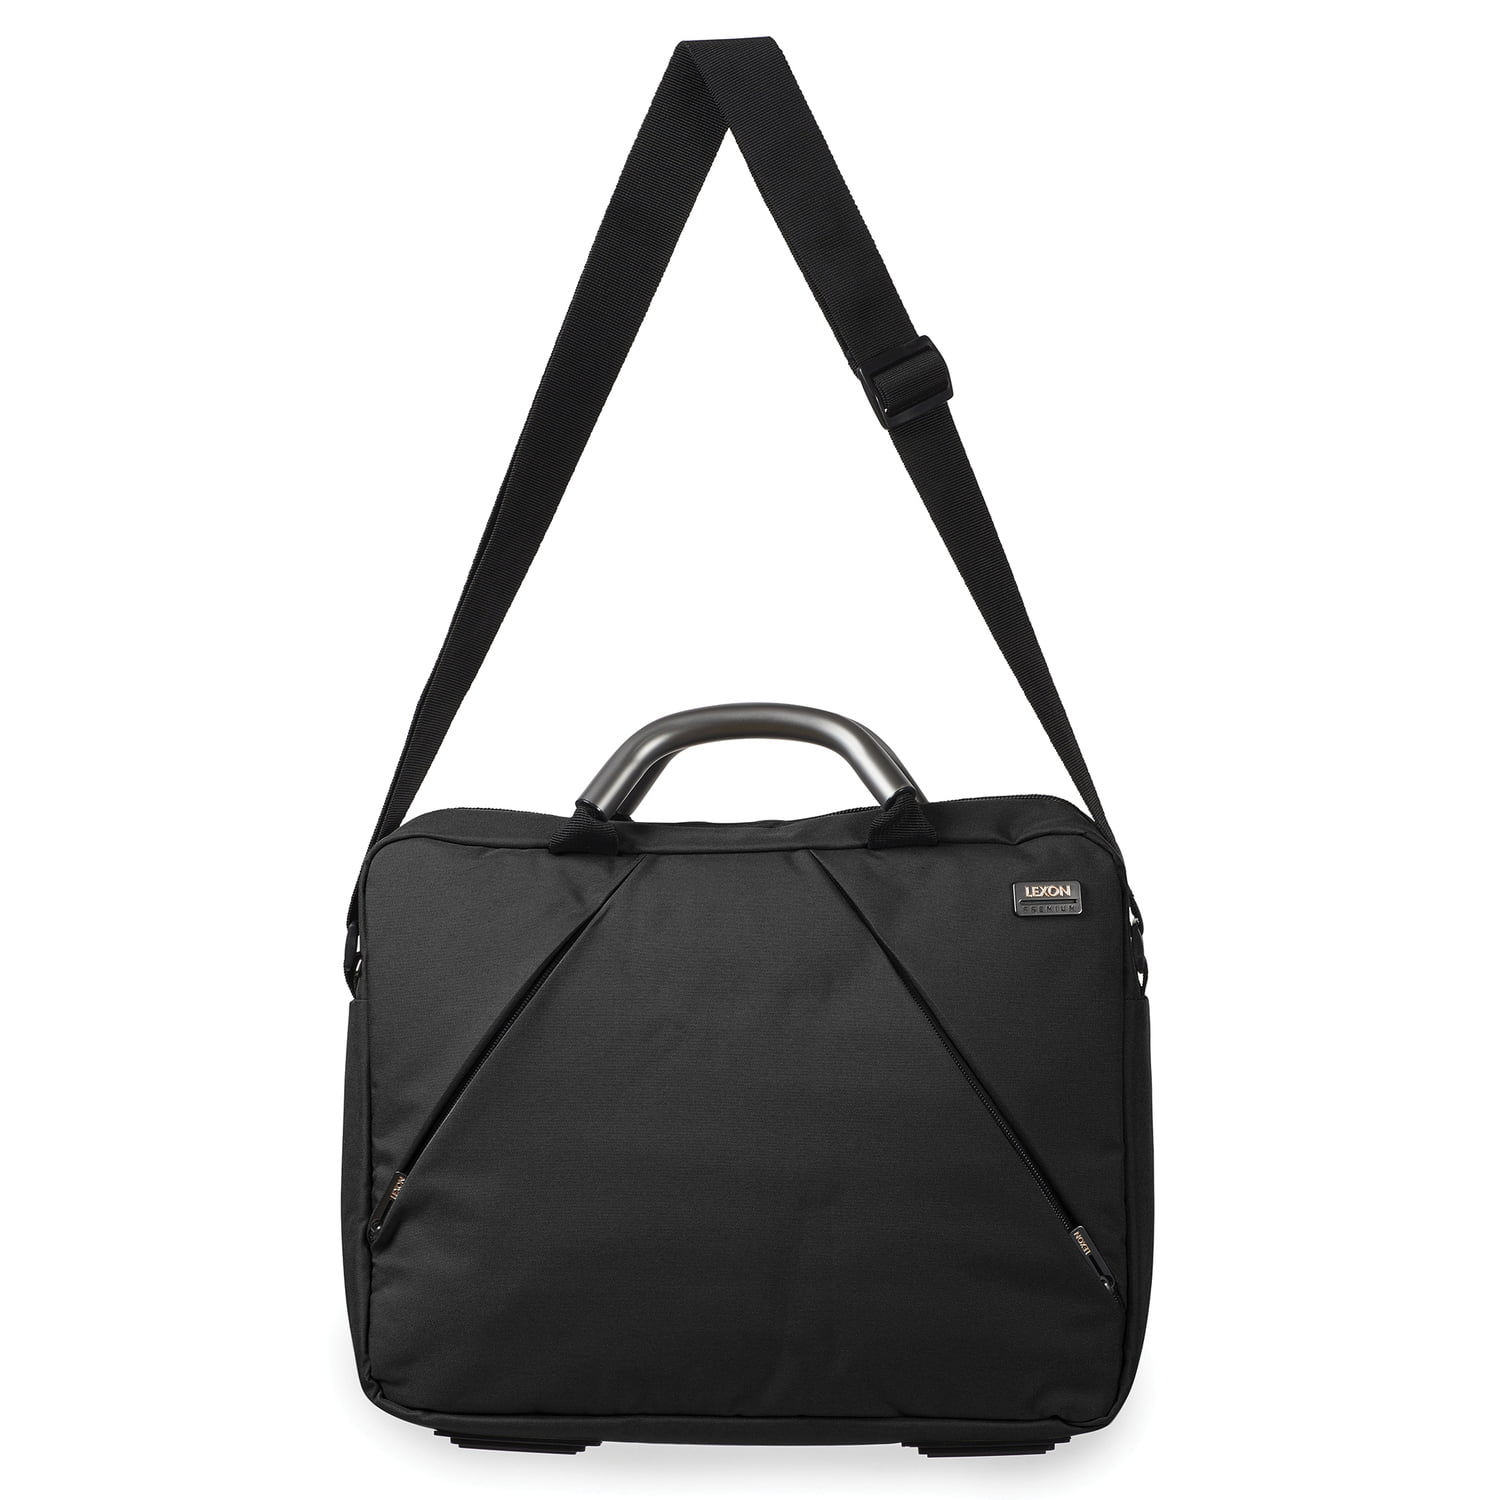 67% OFF on LEXON Air Attache Messenger Bag(Brown, 5 L) on Flipkart |  PaisaWapas.com